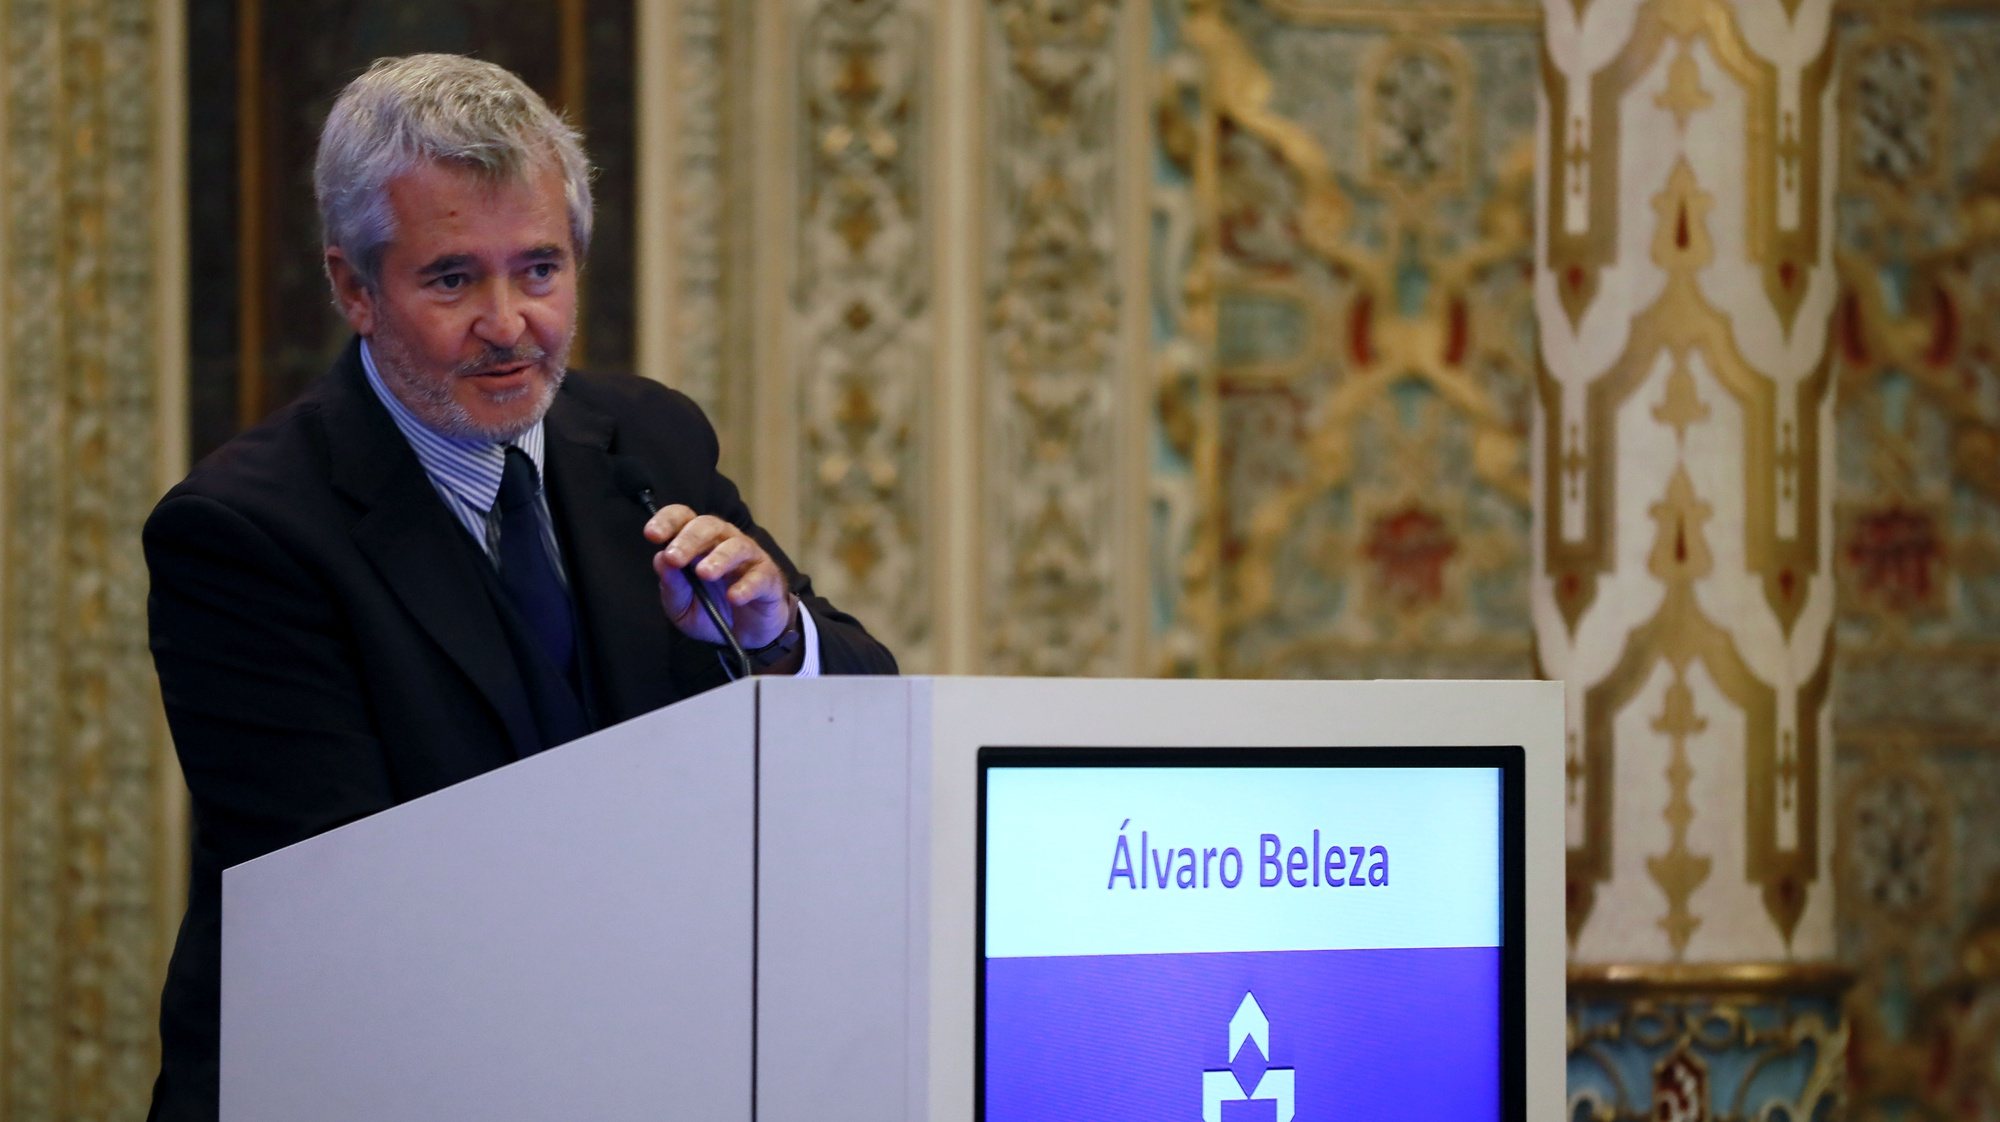 O presidente do conselho coordenador da SEDES, Álvaro Beleza discursa durante a sessão de encerramento do V Congresso da SEDES, no Palácio da Bolsa, no Porto, 05 de Novembro de 2021. ESTELA SILVA/LUSA